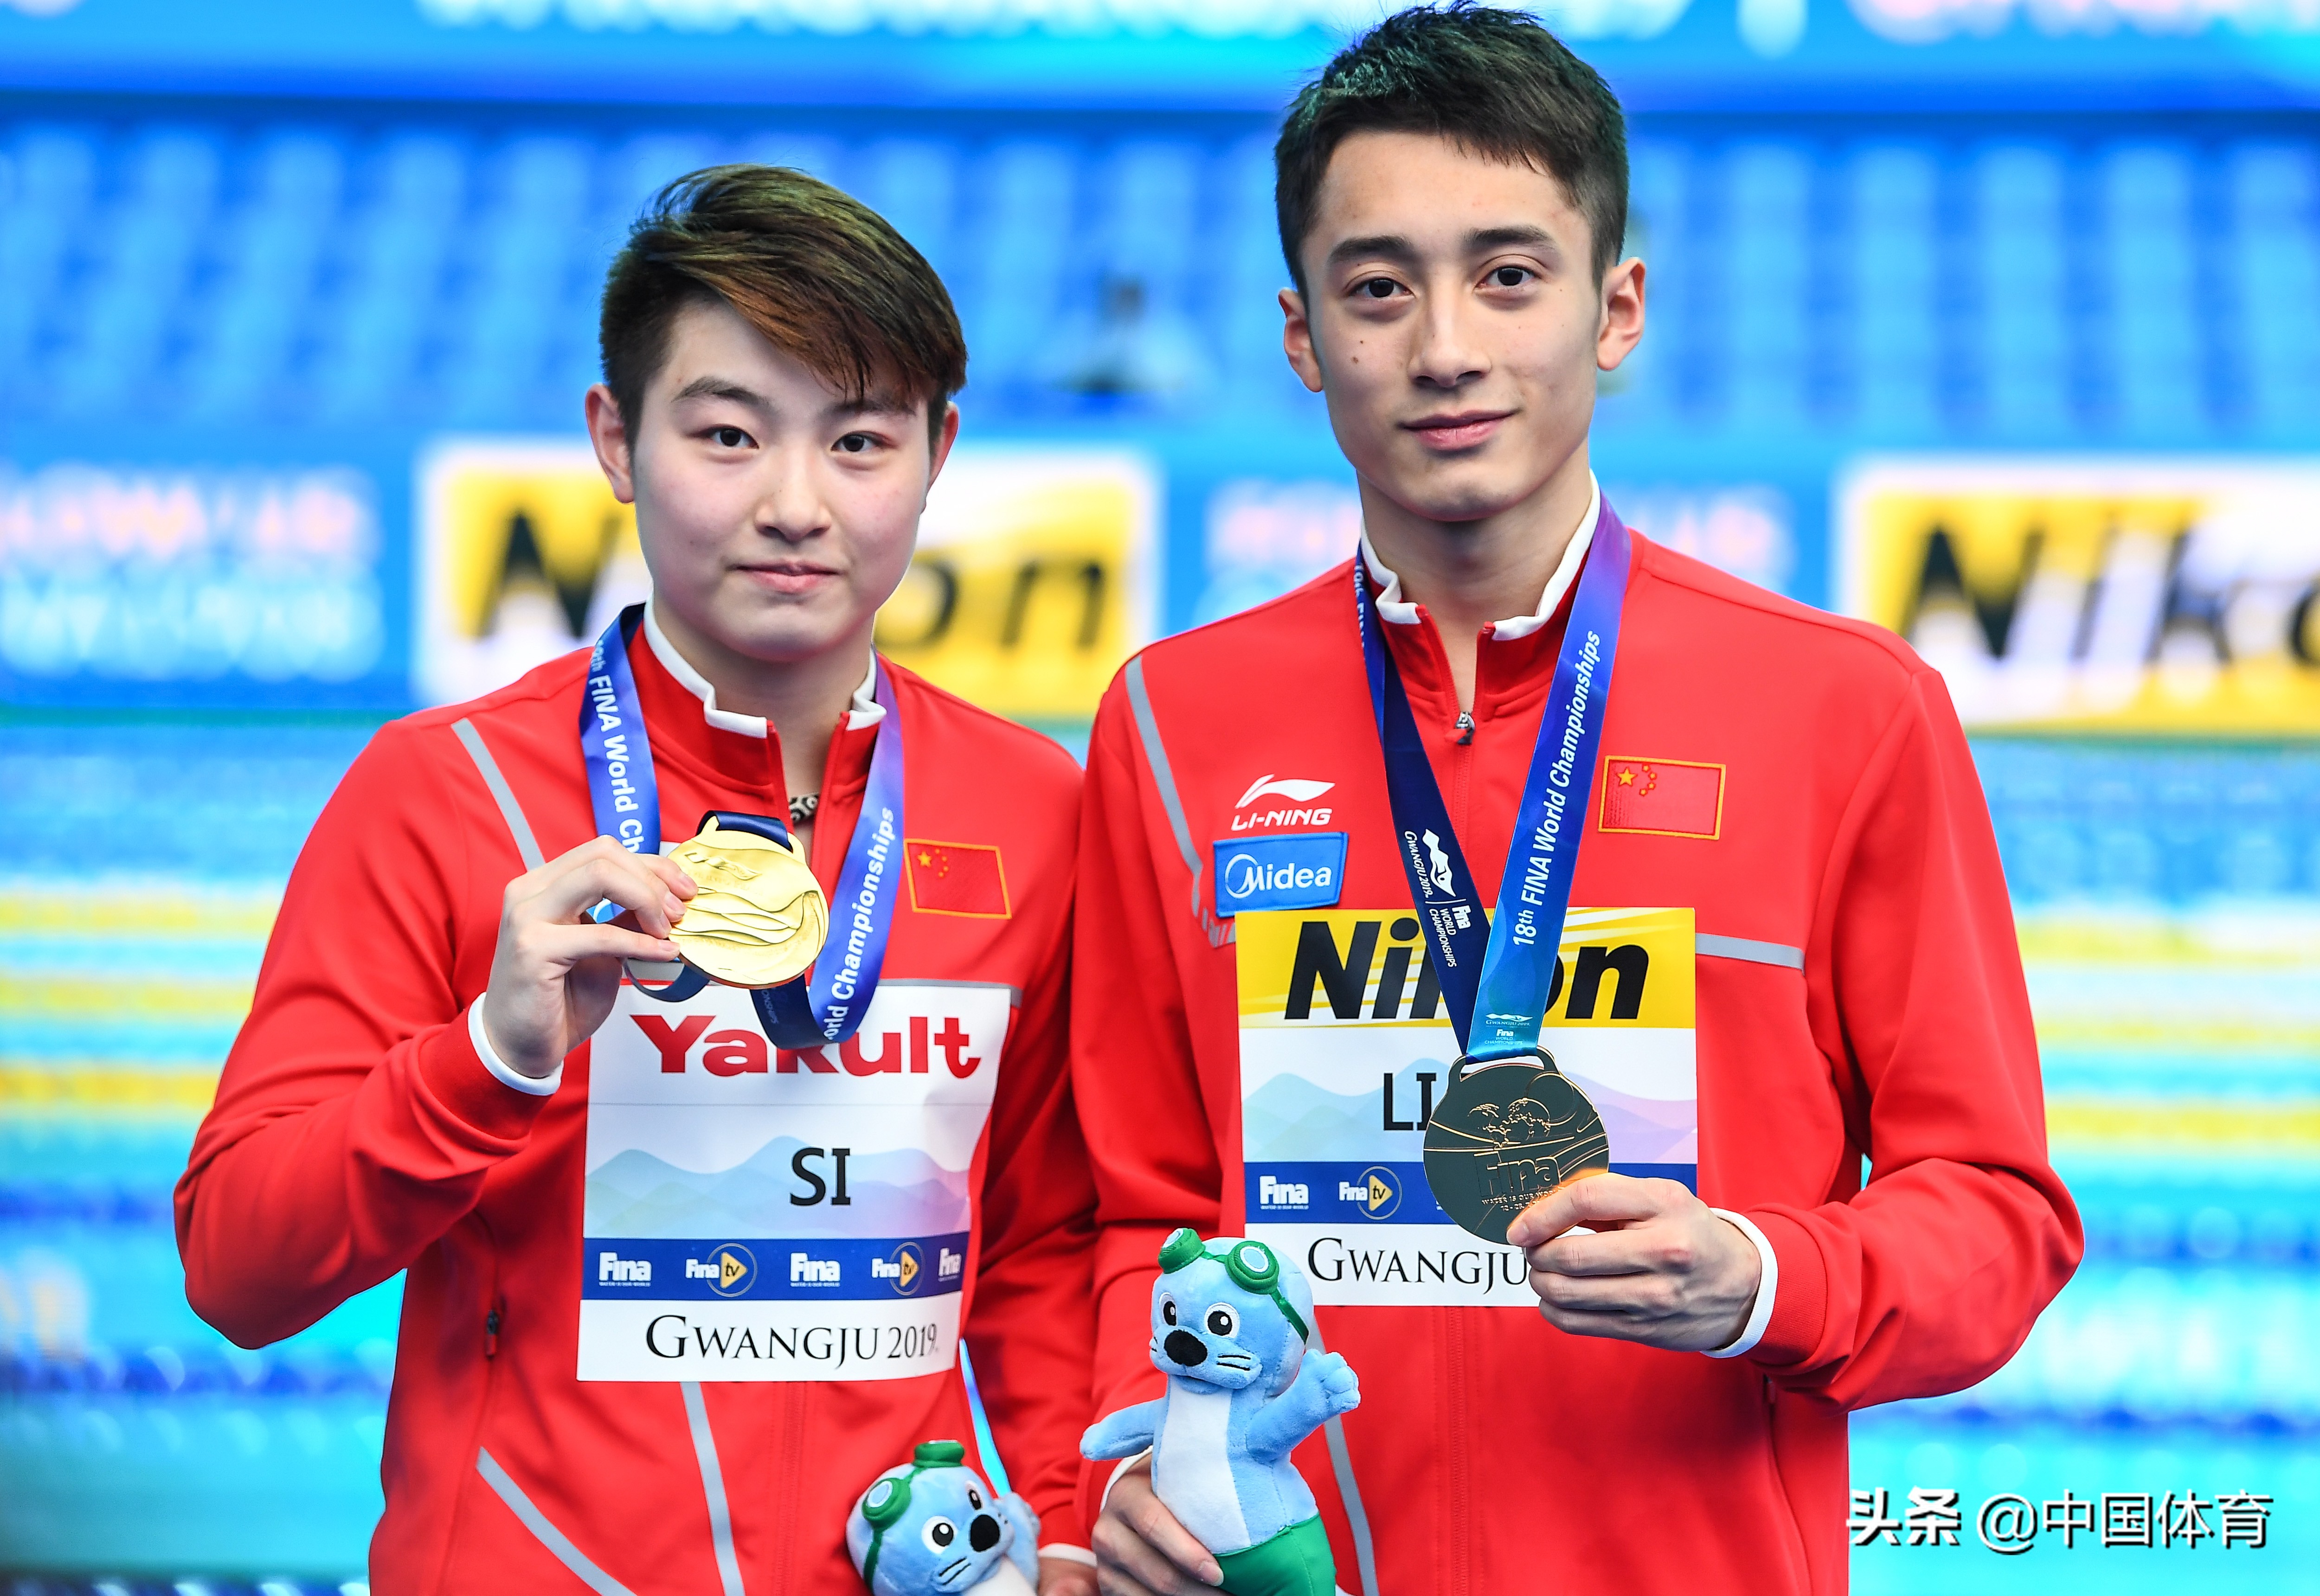 2019国际泳联世锦赛跳水项目 司雅杰/练俊杰混双十米台夺冠